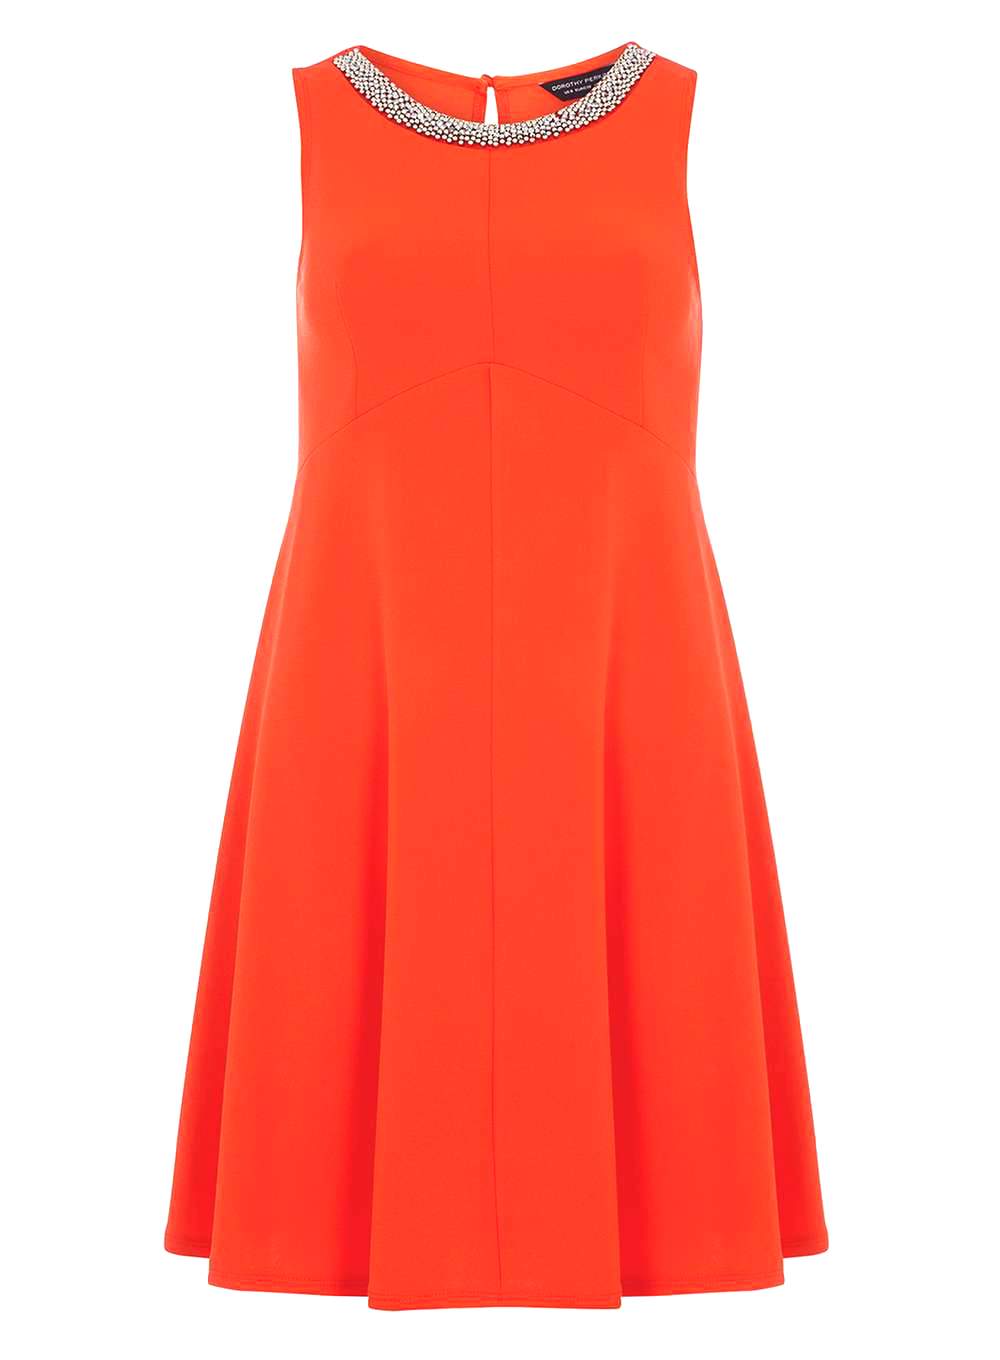 Dorothy Perkins Womens Orange Embellished Party Dress UK 14 EU 42 | eBay